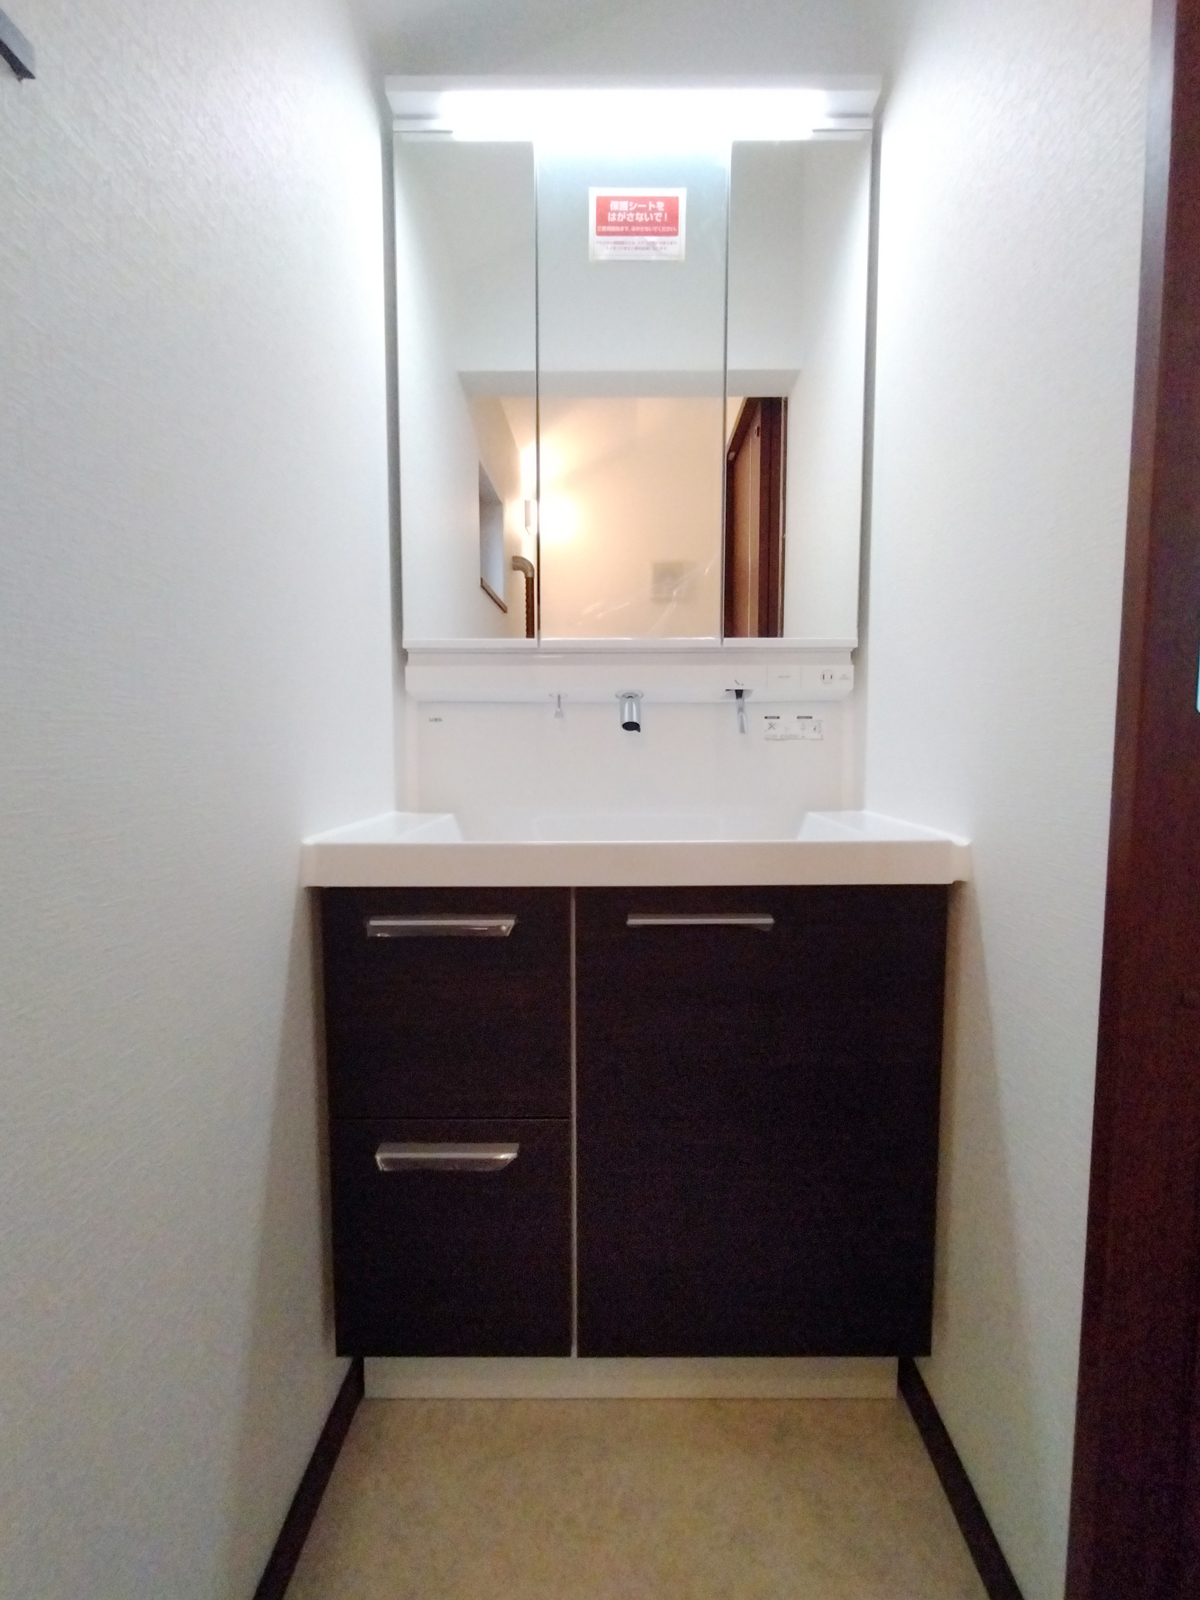 2階トイレの向かい側に洗面台を設置しました
もともと扉位置までしかなかったトイレスペースを、裏側にあった押入をなくしてスペースを設けて取り付けました